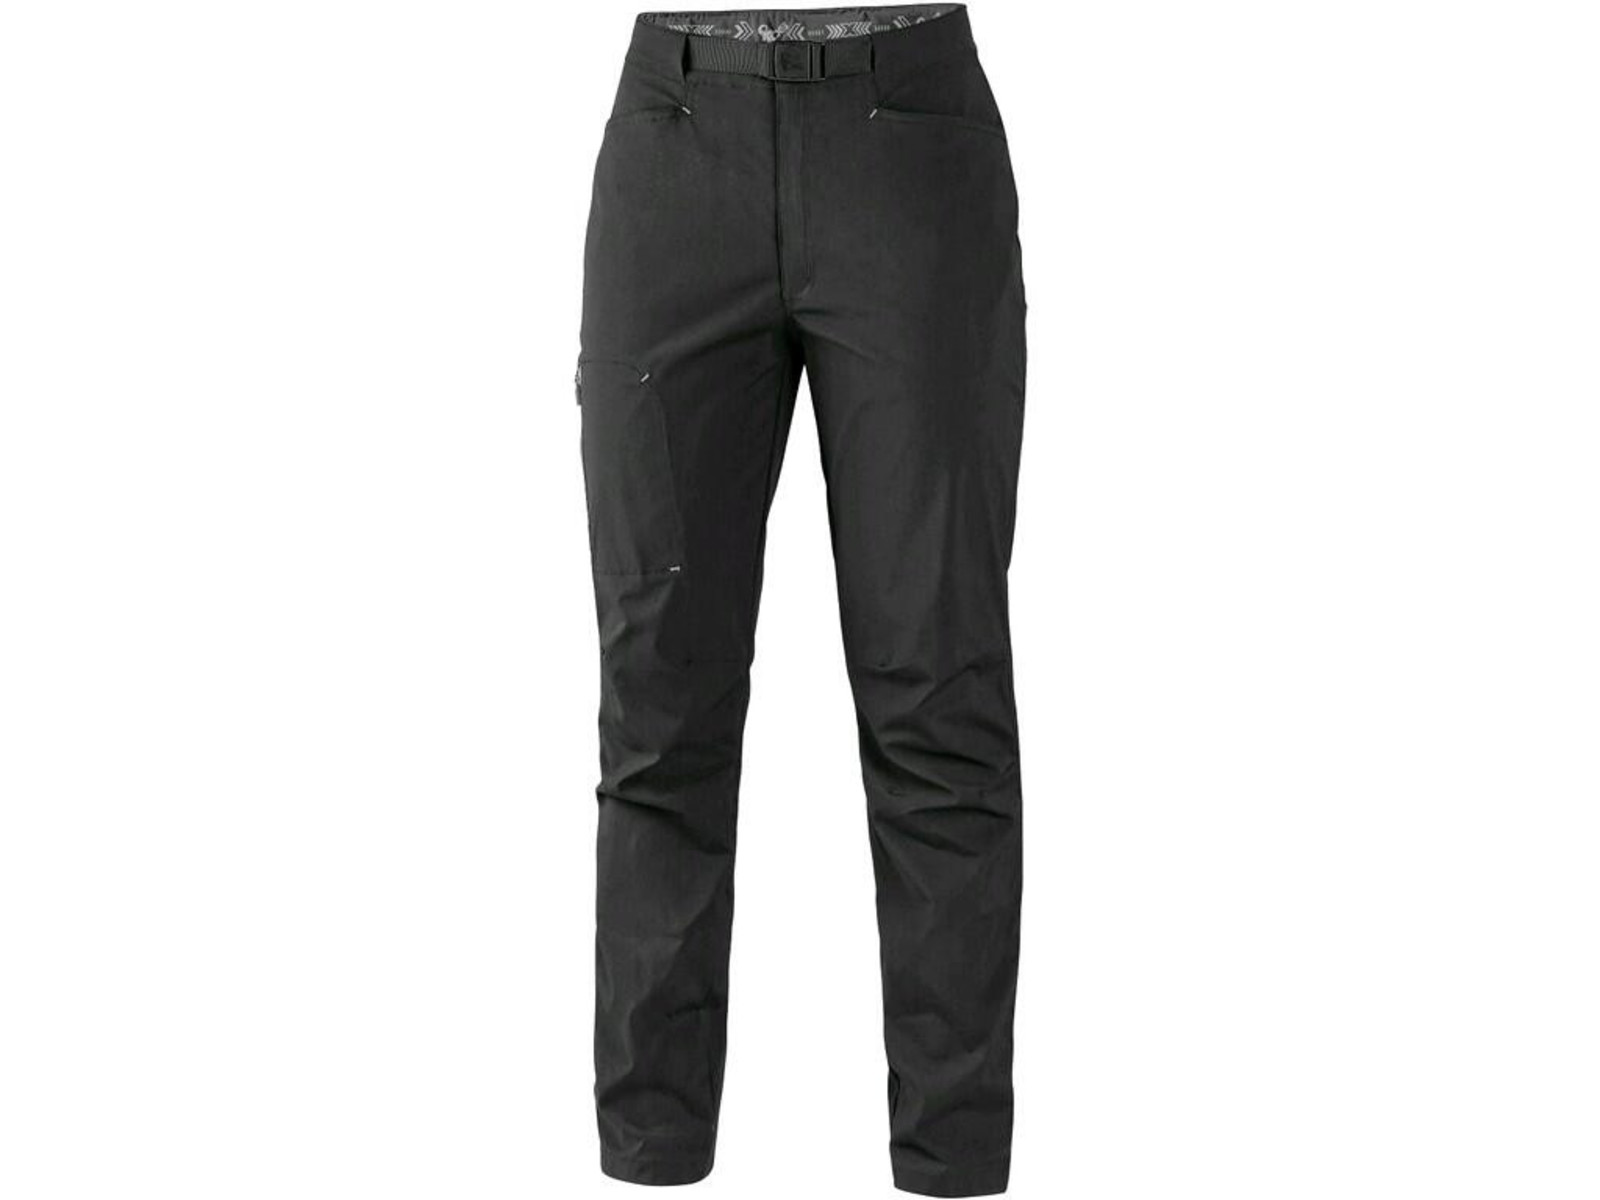 Dámske letné nohavice CXS Oregon - veľkosť: 38, farba: čierna/sivá